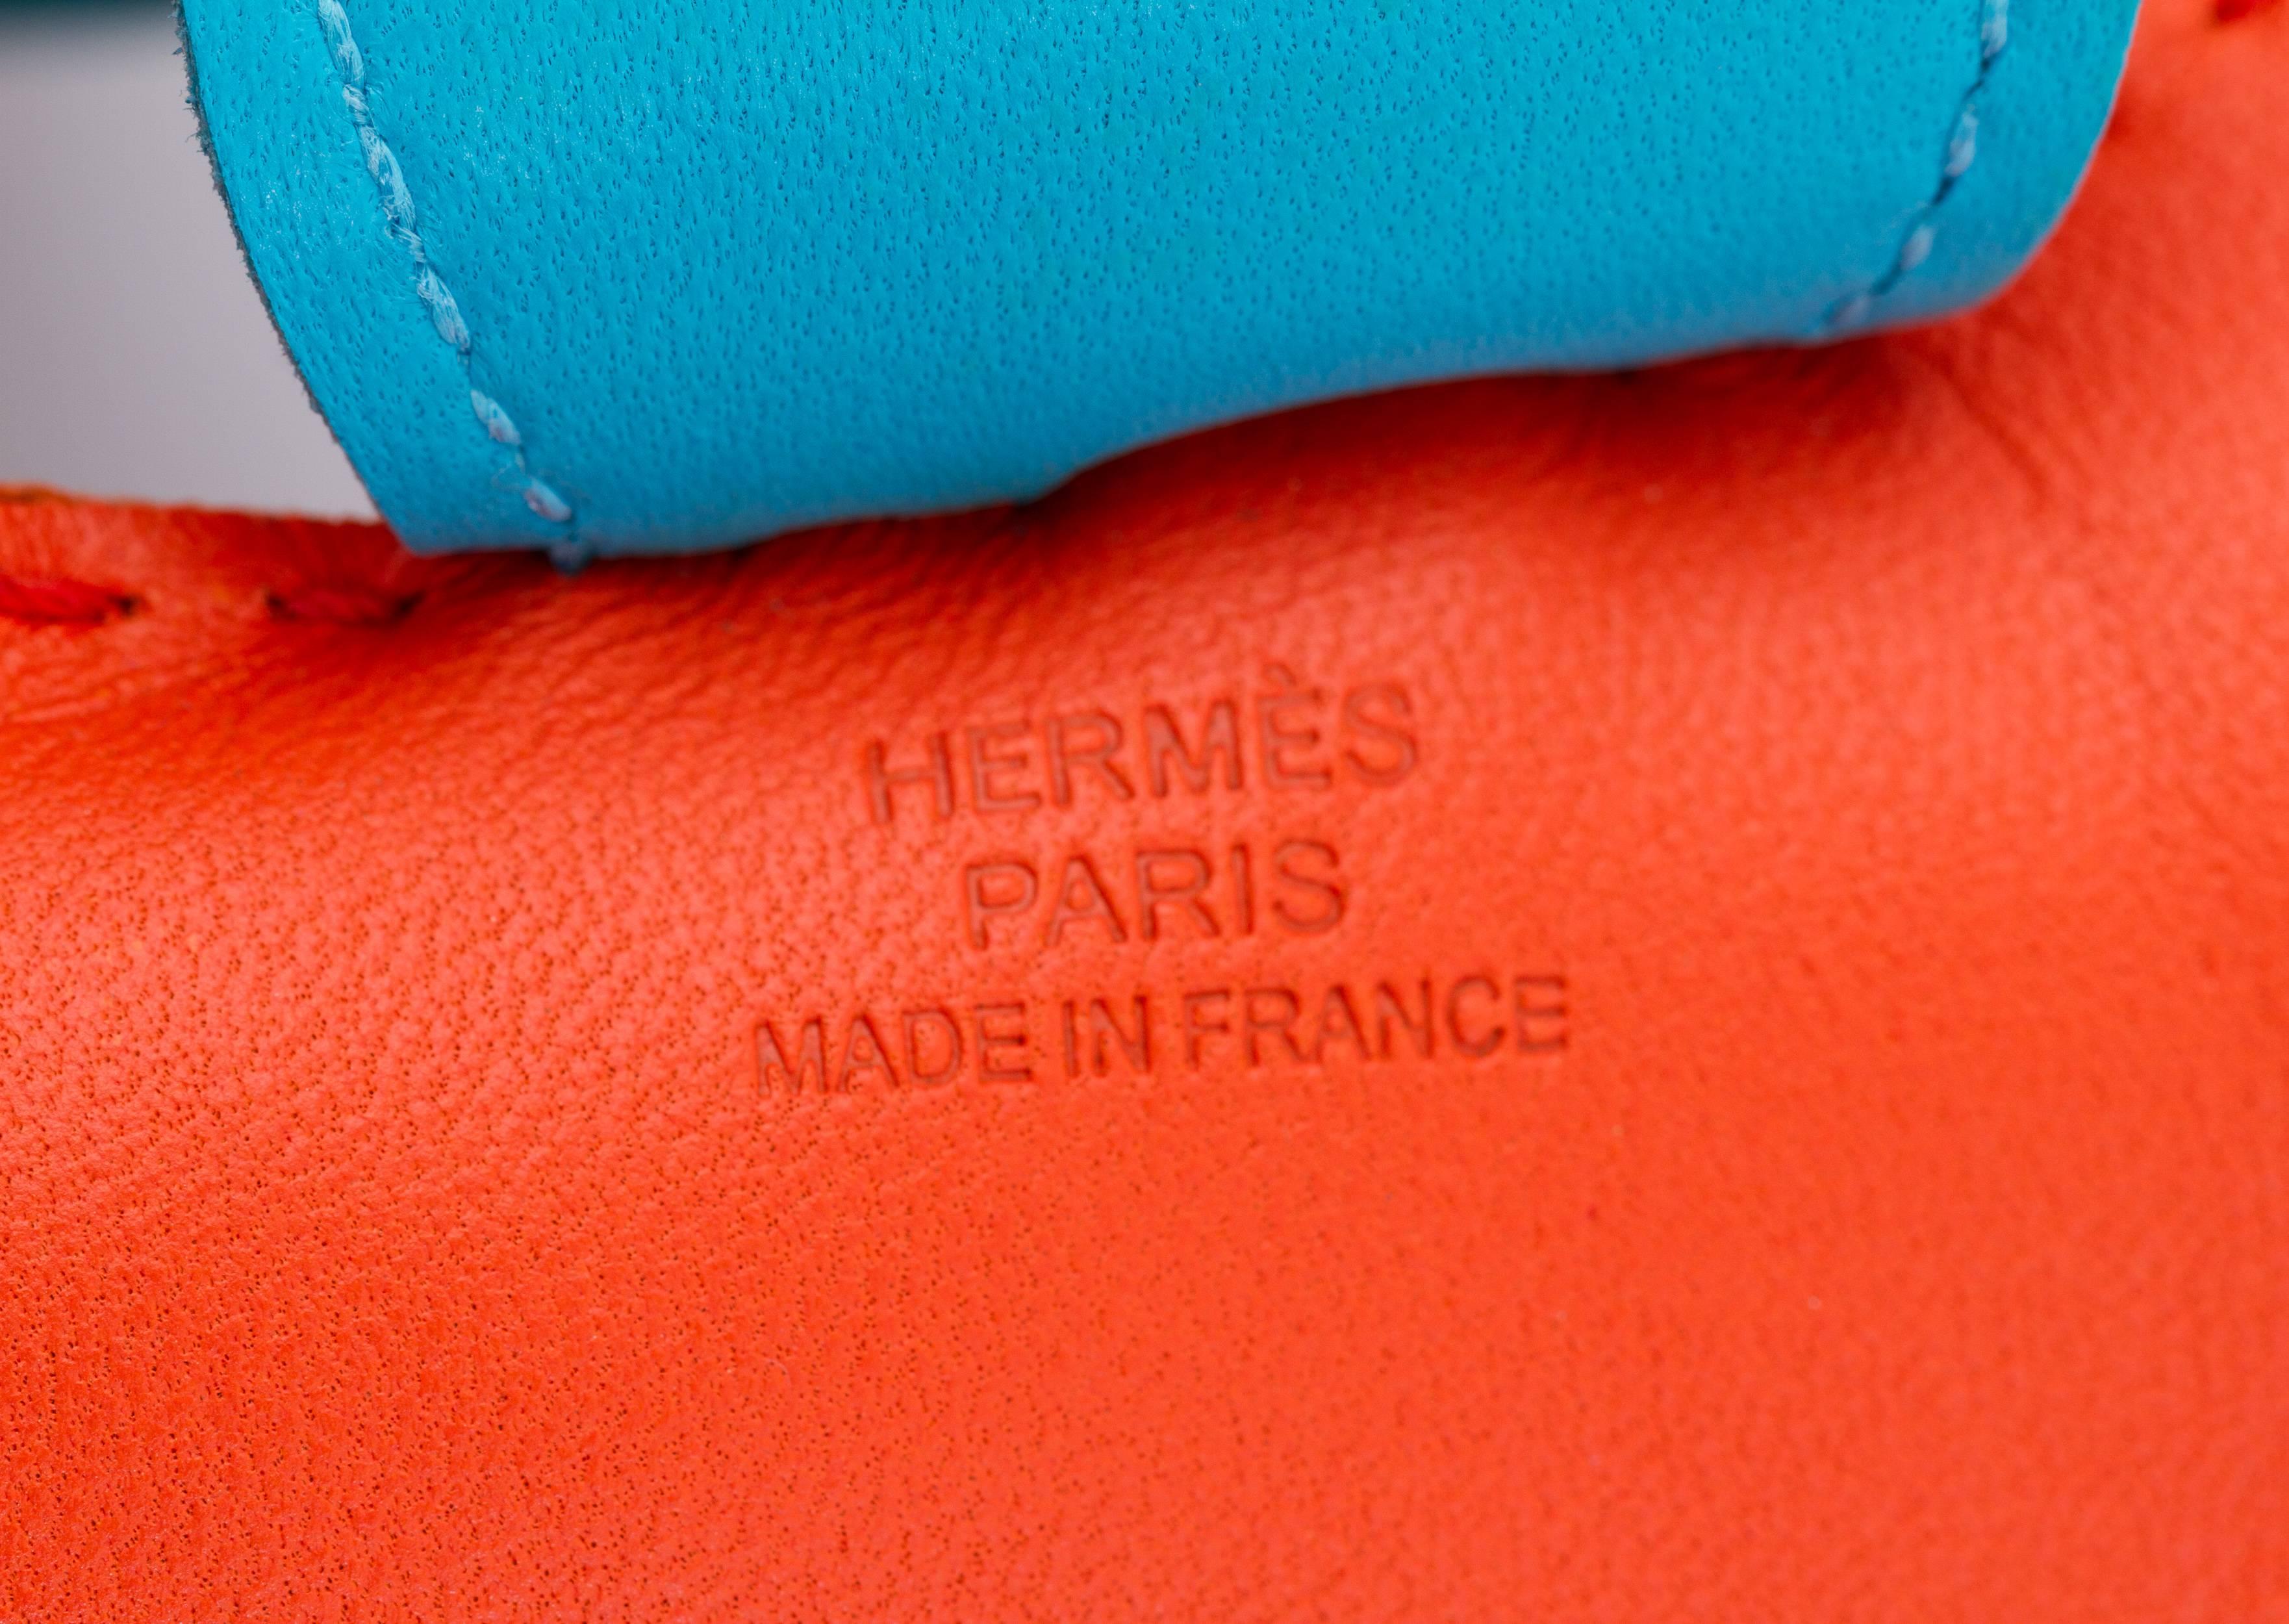 Rare Rodeo Mohnblumen-Tasche Charme von Hermès  für Damen oder Herren